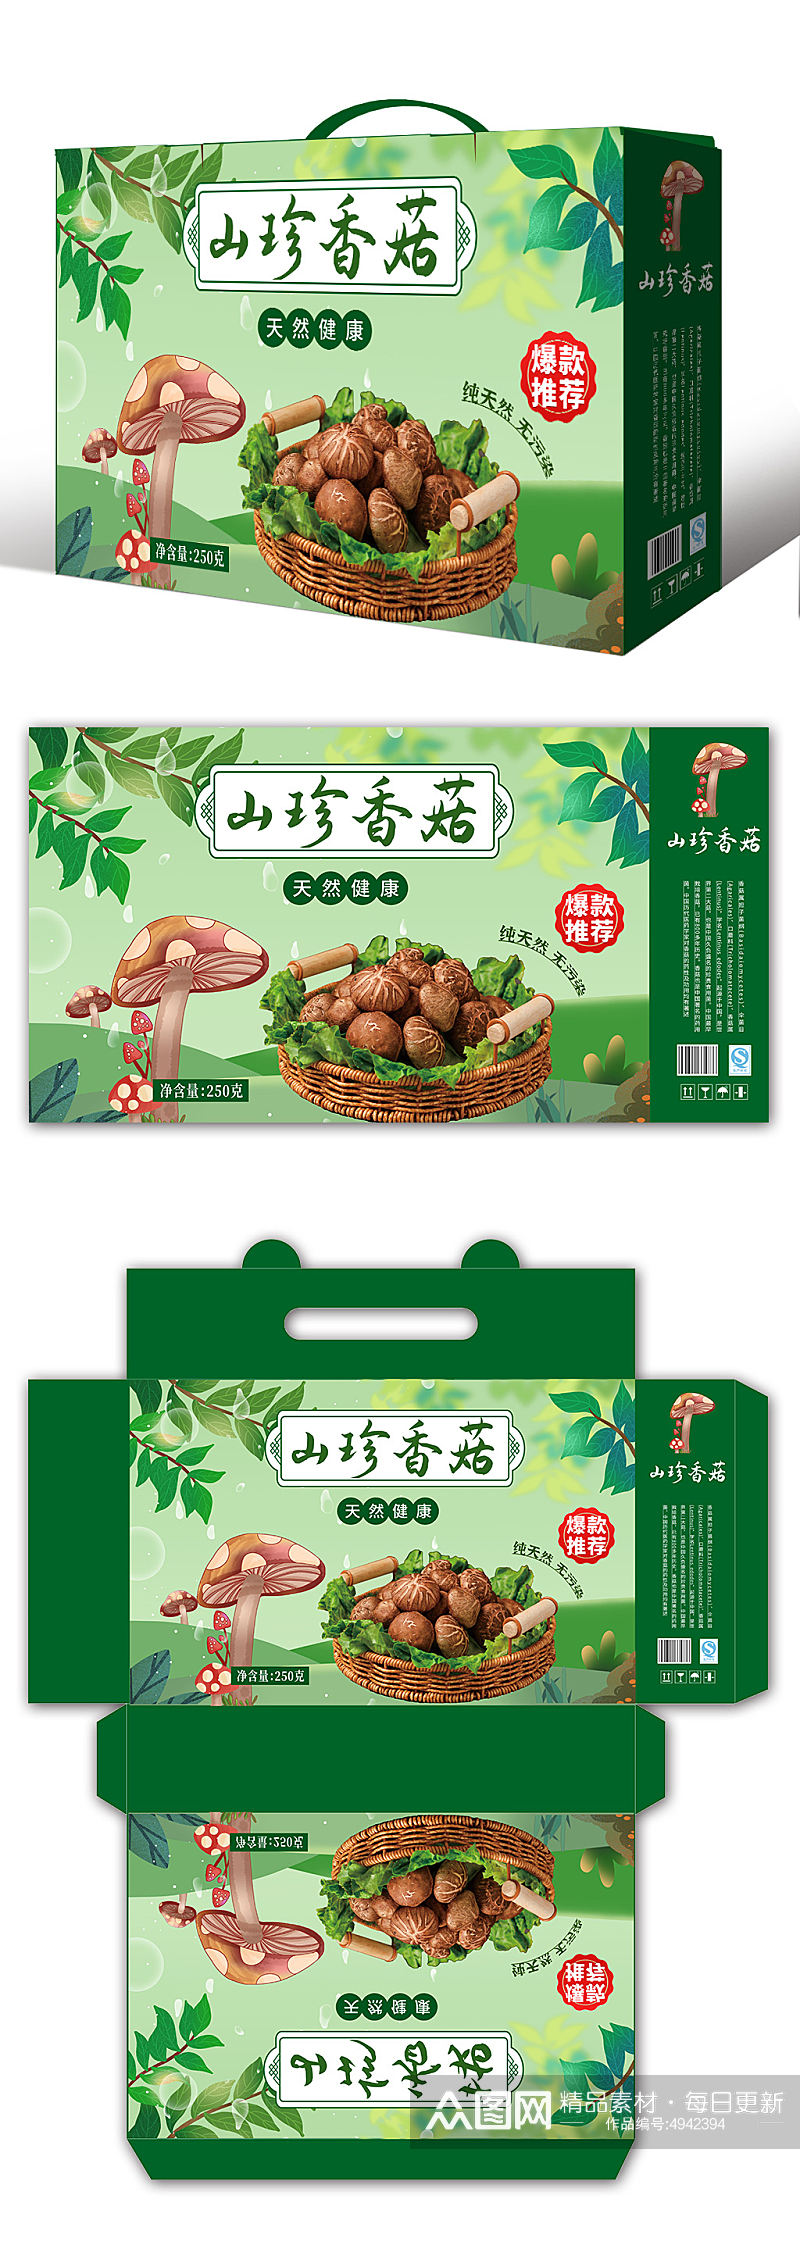 绿色大气山珍香菇蘑菇农产品礼盒包装设计素材